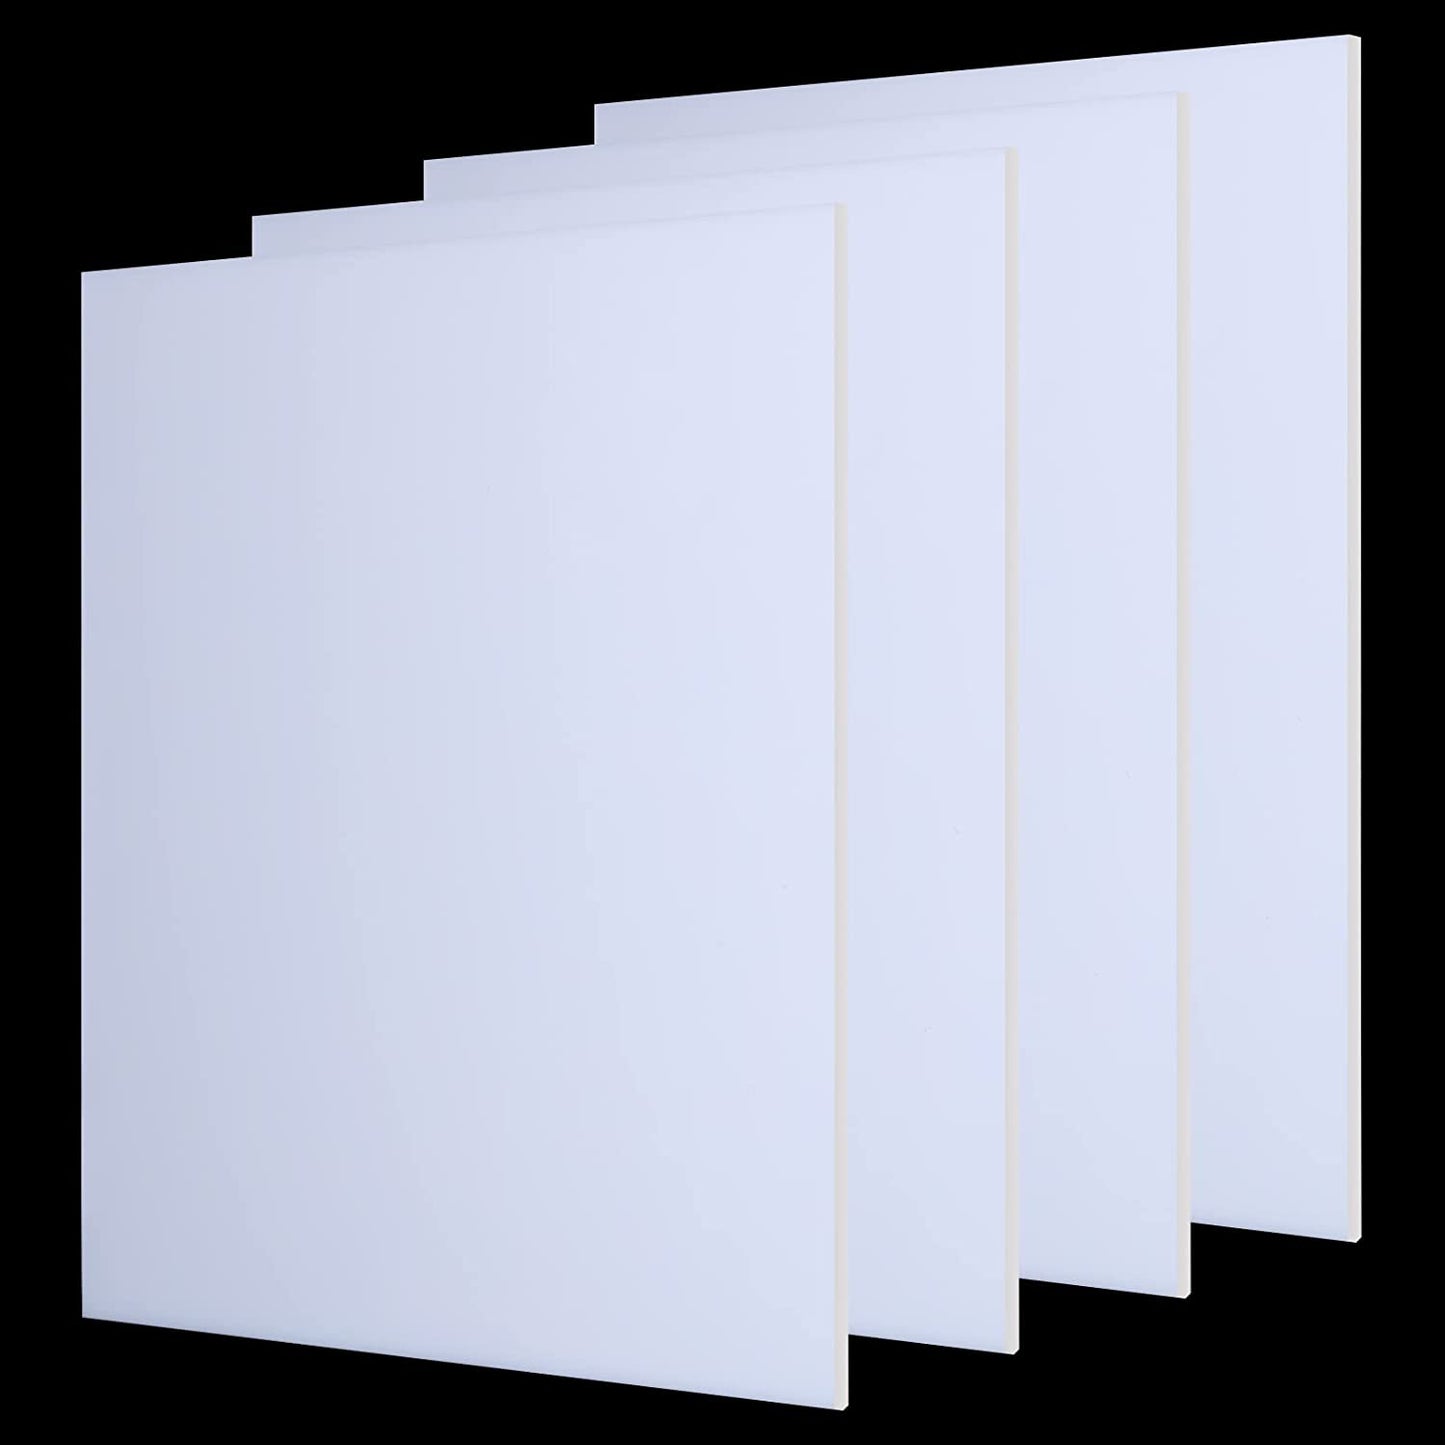 White Acrylic Sheet